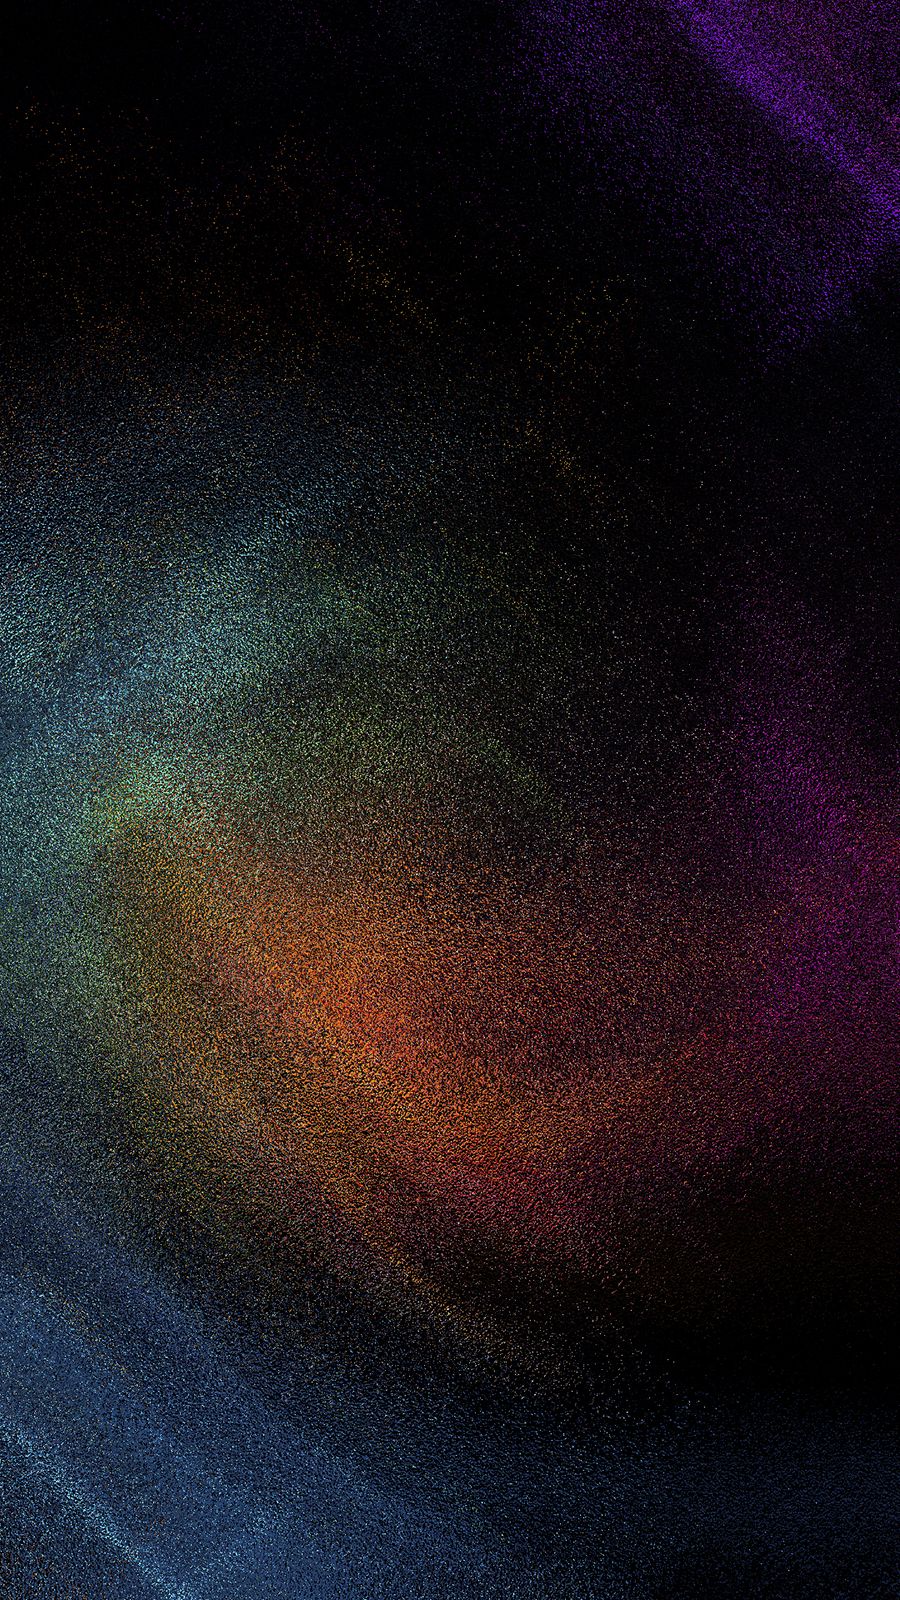 Colorful powder on a black background - Galaxy